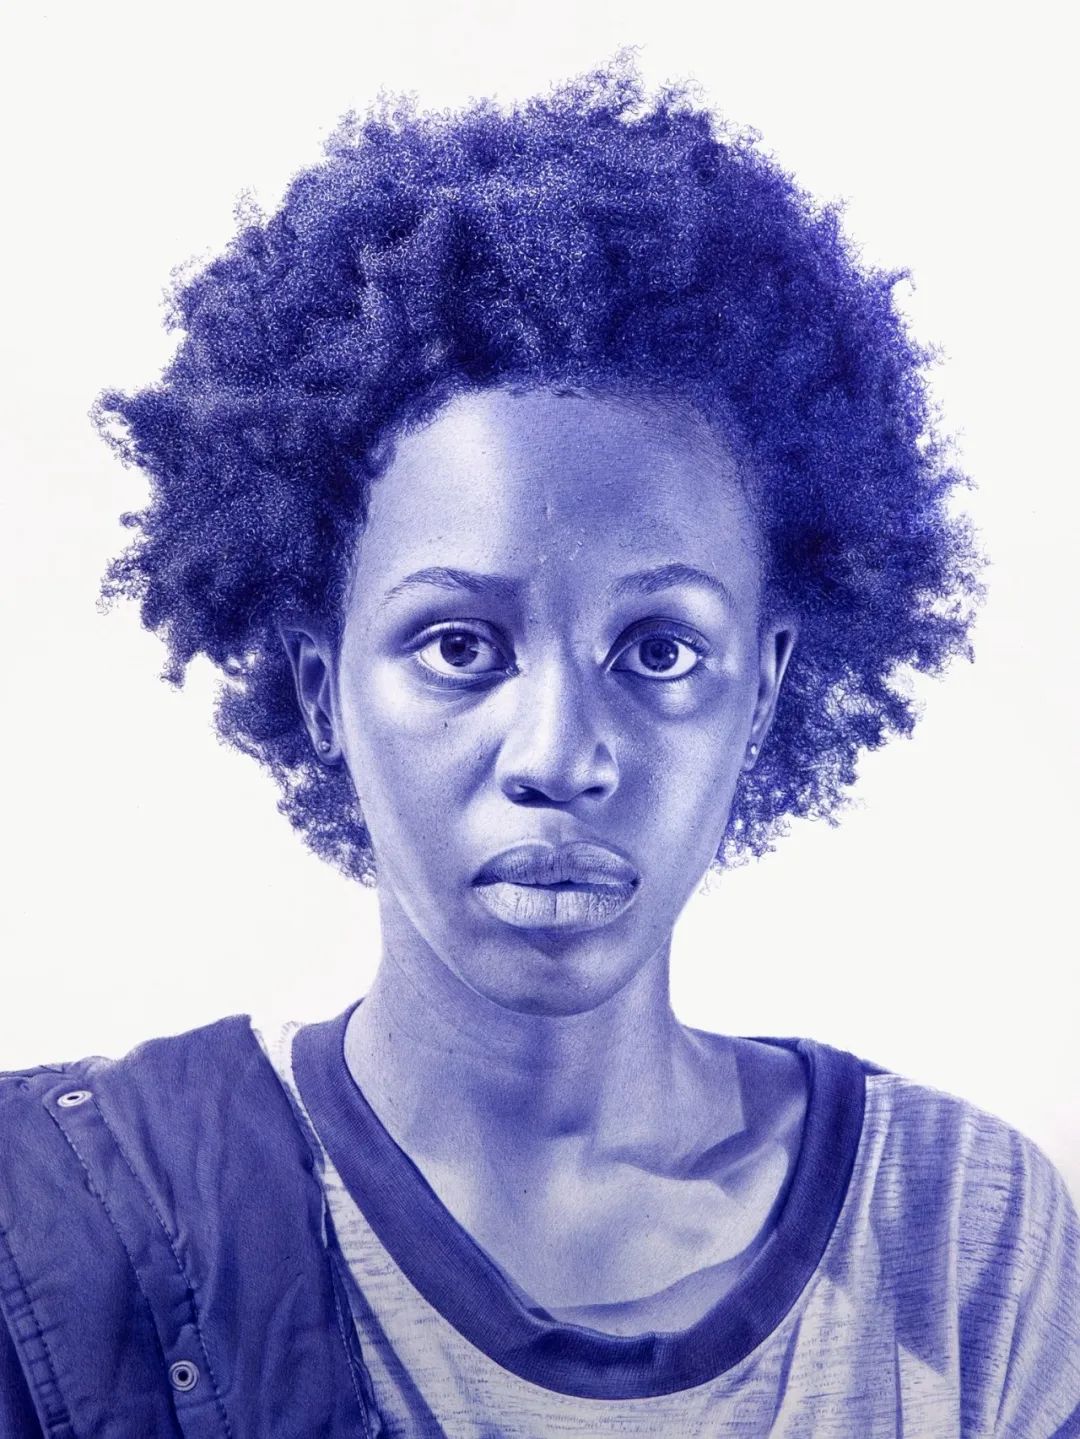 超写实圆珠笔素描，尼日利亚画家奥斯卡·尤科努作品